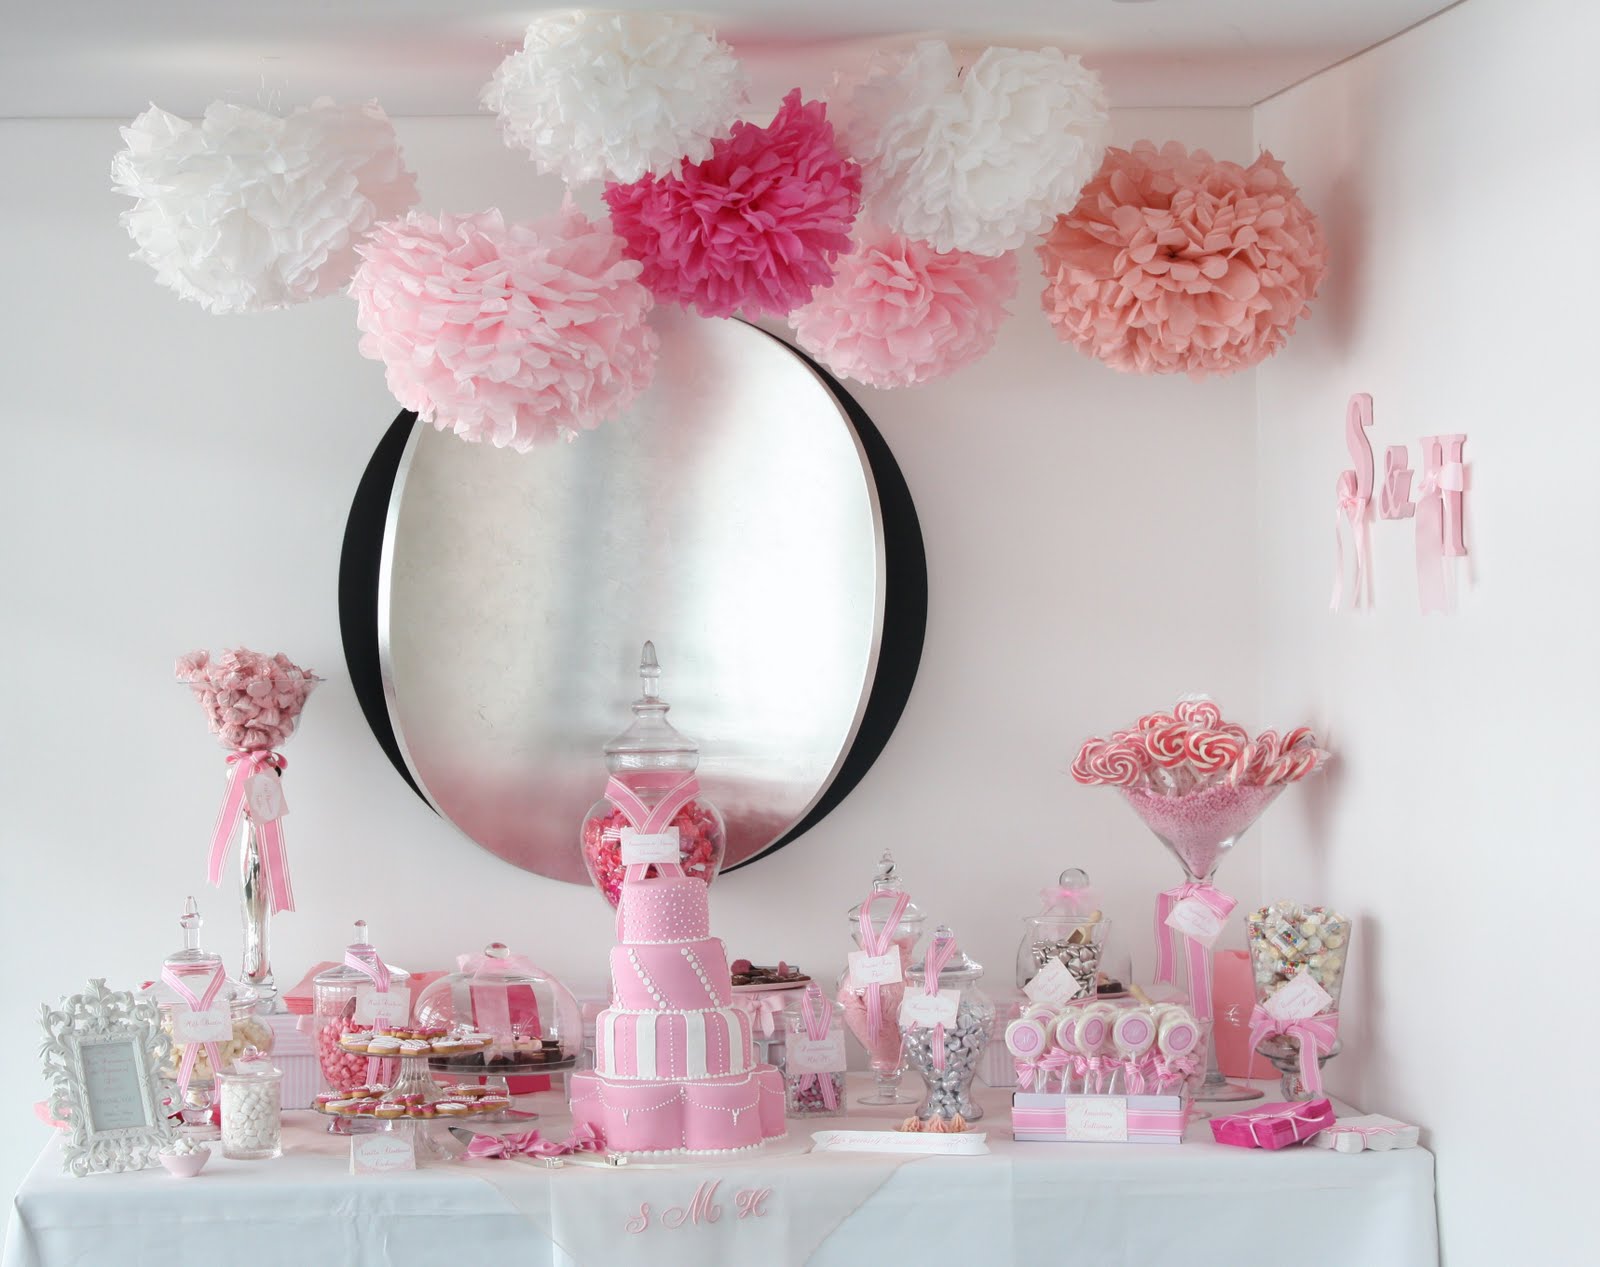 http://2.bp.blogspot.com/_HP5PABD1mDc/S_03JFnalaI/AAAAAAAAAL8/htZrnmfwUZI/s1600/pink-white-wedding-dessert-candy-buffet-tissue-paper-pom-poms.jpg